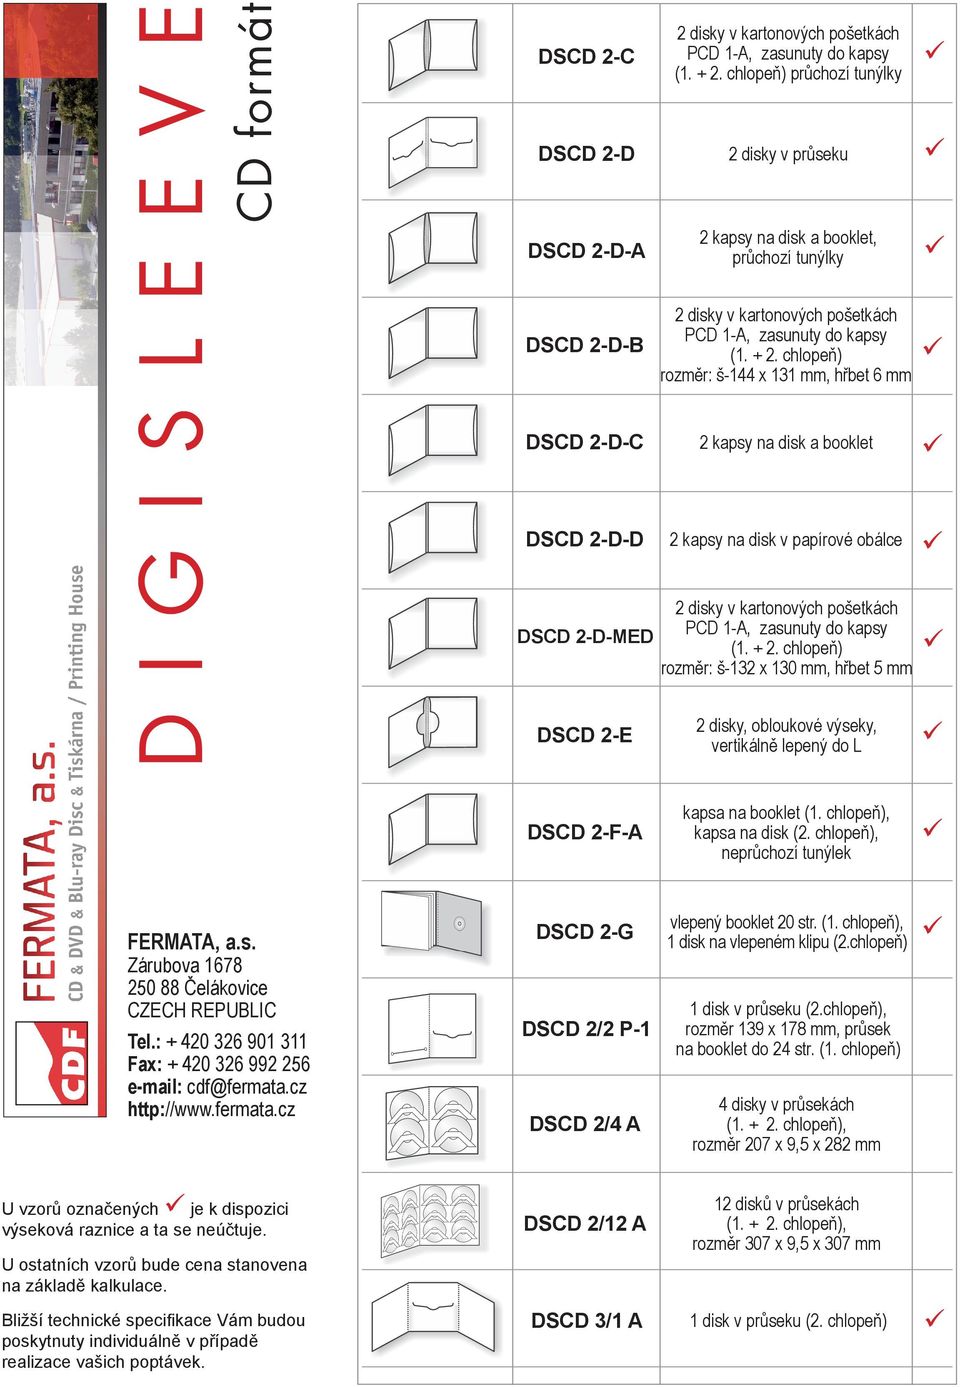 chlopeň) rozměr: š-144 x 131 mm, hřbet 6 mm DSCD 2-D-C 2 kapsy na disk a booklet DSCD 2-D-D 2 kapsy na disk v papírové obálce DSCD 2-D-MED (1. + 2.